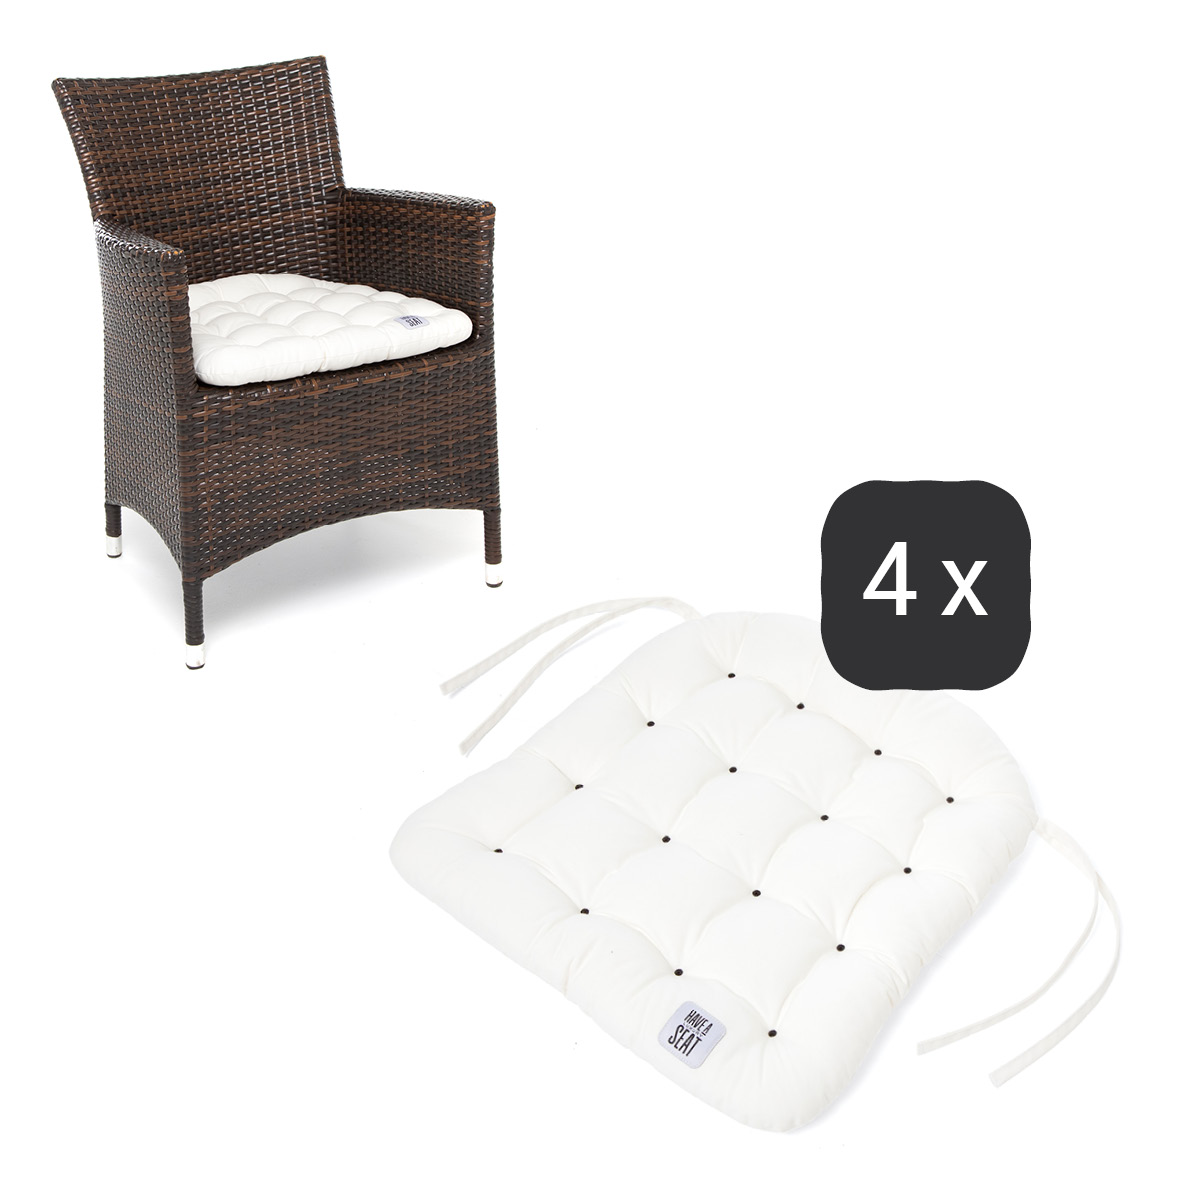 Sitzkissen für Rattanstühle 48x46 cm | Weiß | 4er Set | Premium-Sitzkomfort | Indoor / Outdoor | waschbar bis 95°C | HAVE A SEAT Living